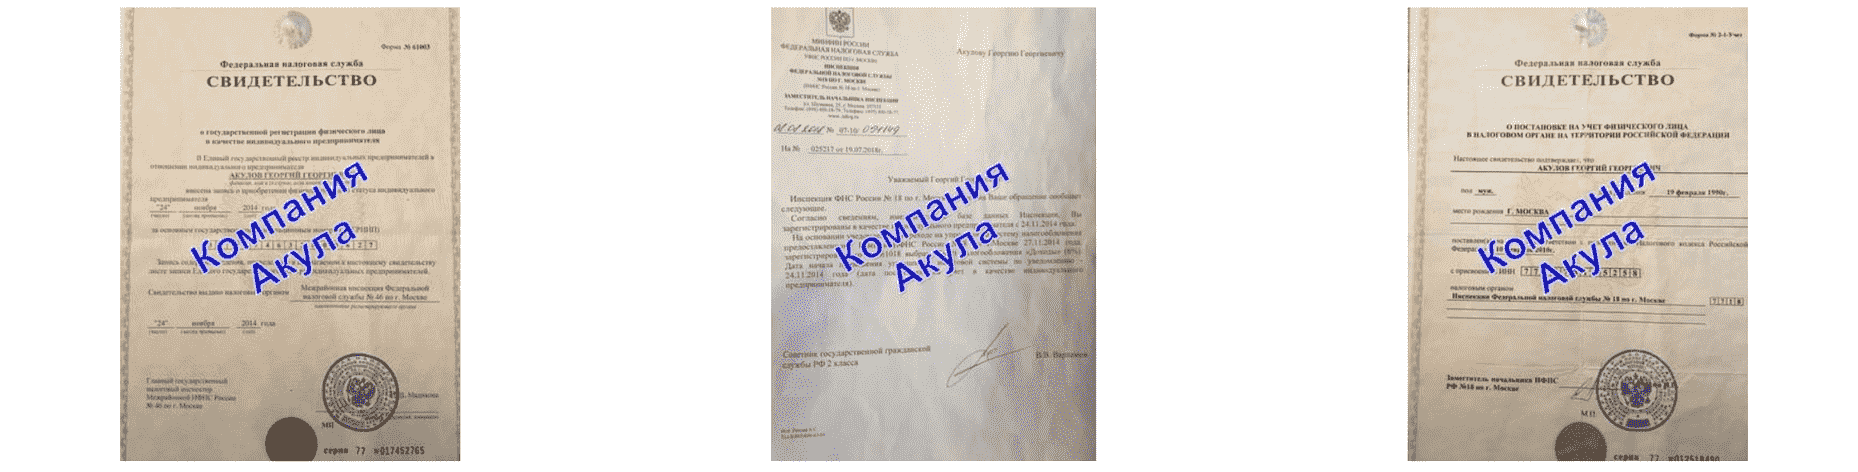 Документы агентства поэтажной расклейке в г. Нижние Серги